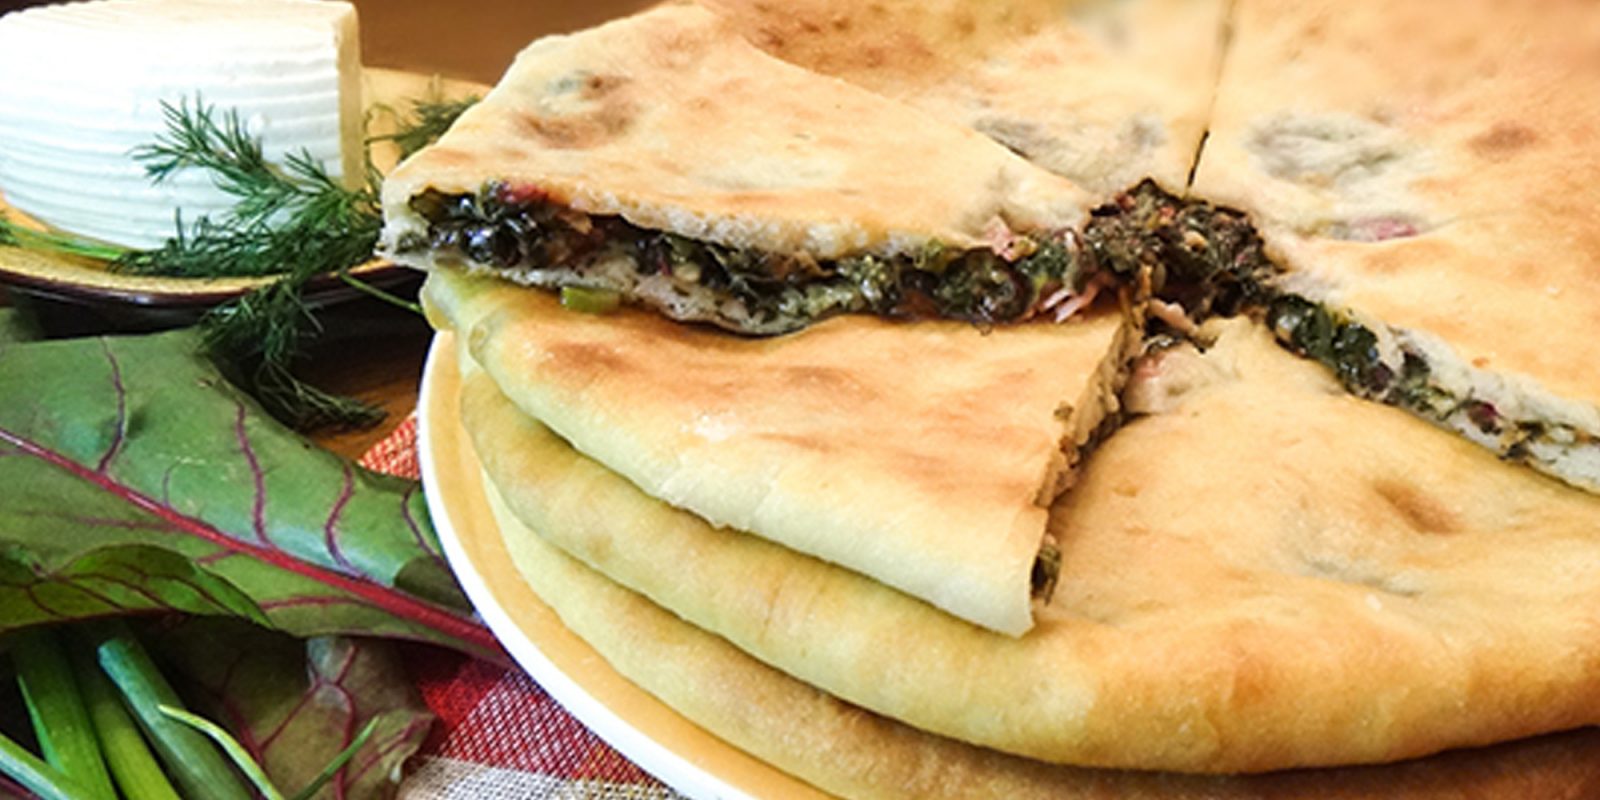 Осетинские пироги с свекольной ботвой и сыром рецепт с фото пошагово